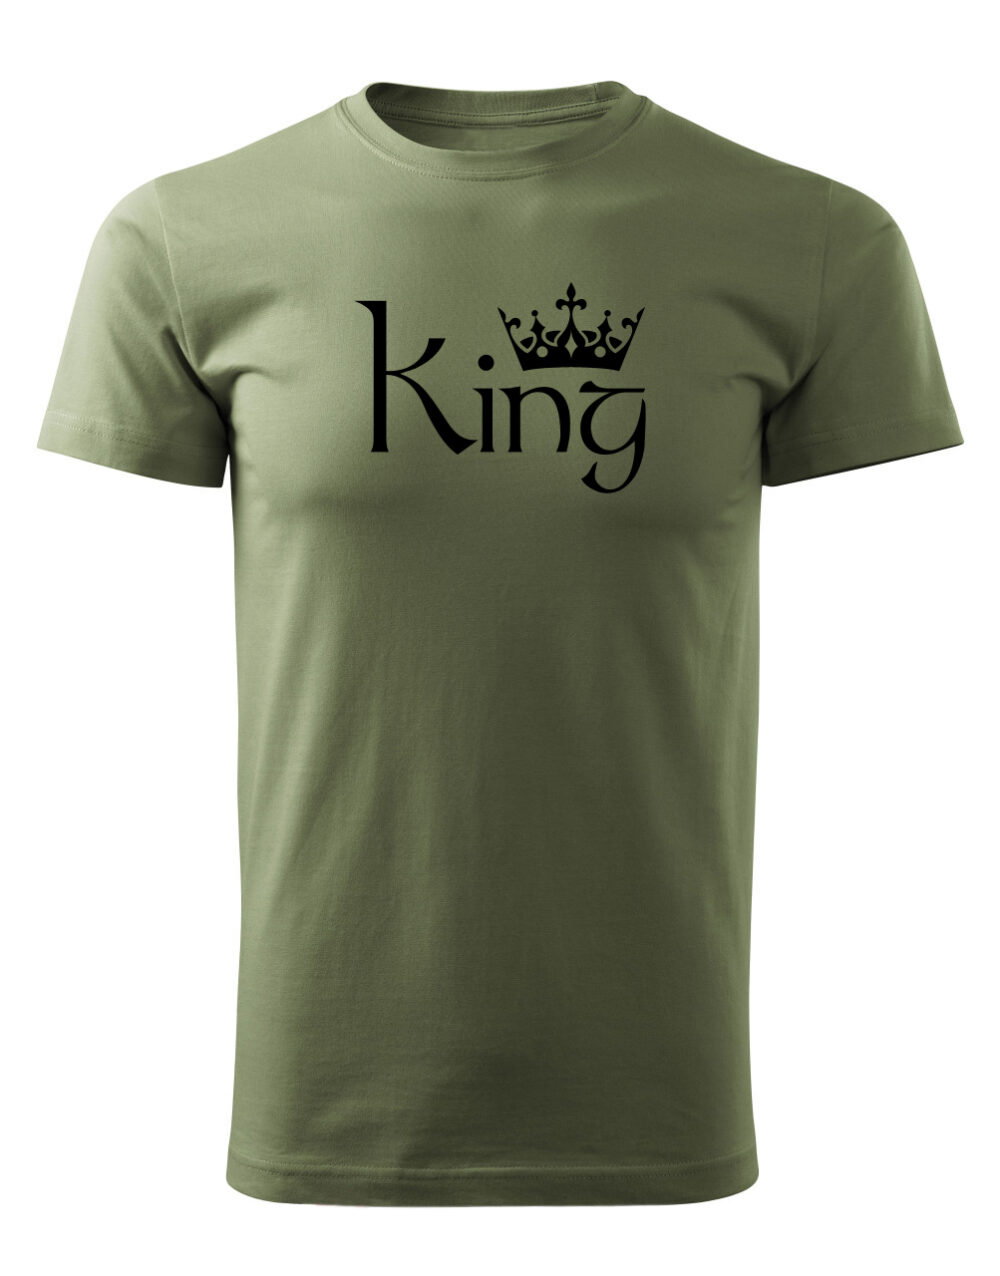 Pásnké tričko s potiskem King vlašský ořech